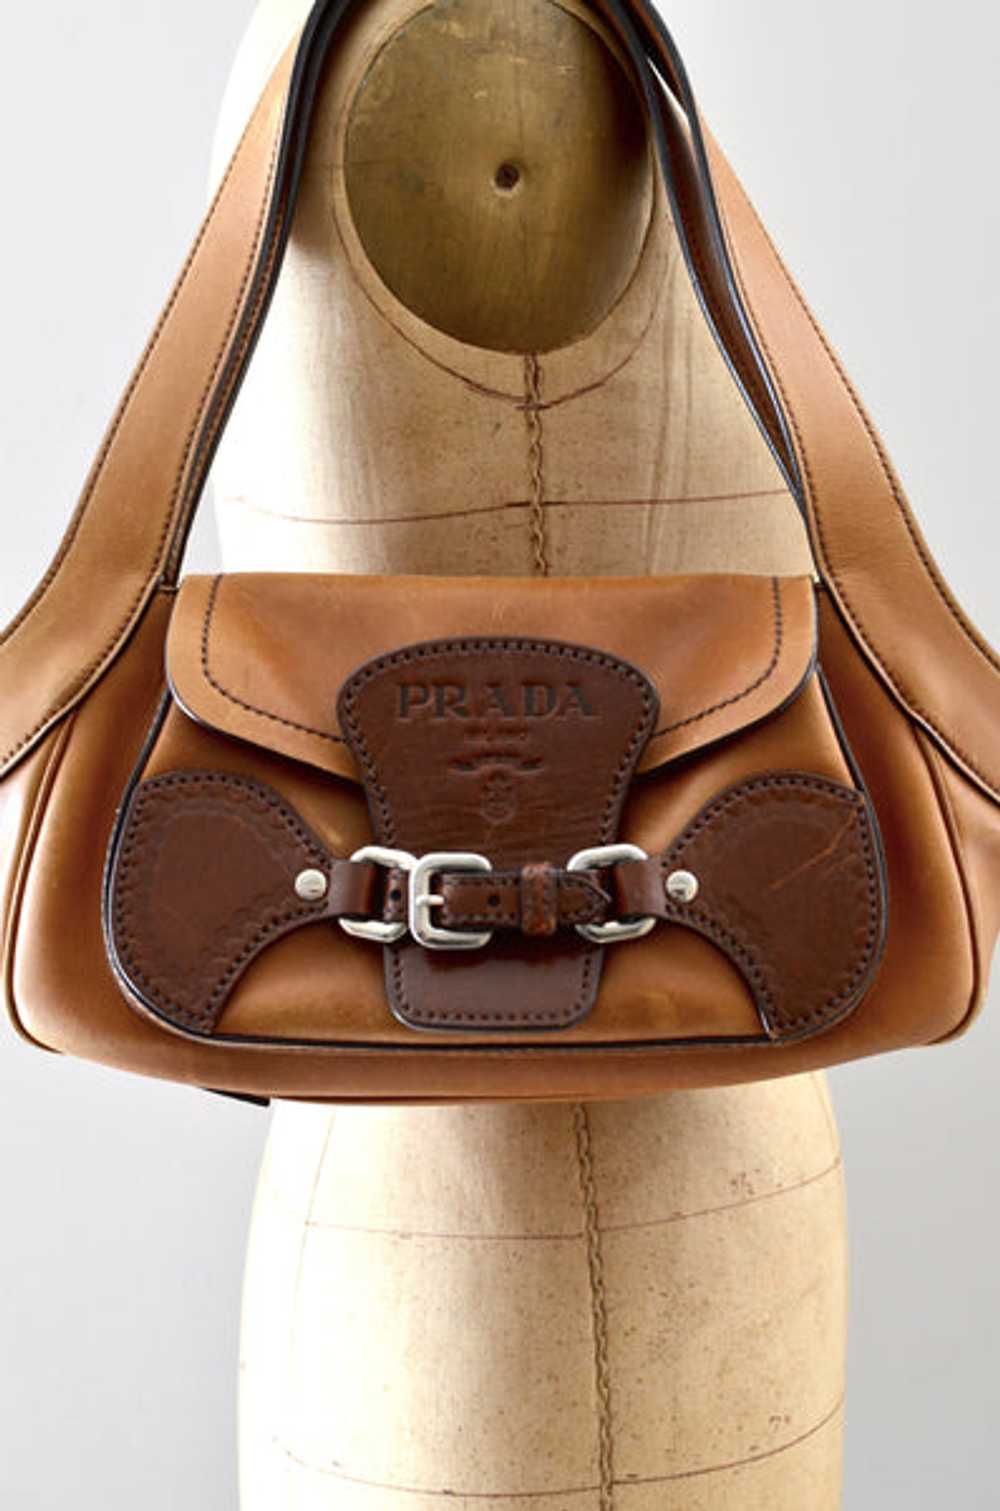 Prada Tabacco Leather Shoulder Bag - image 3